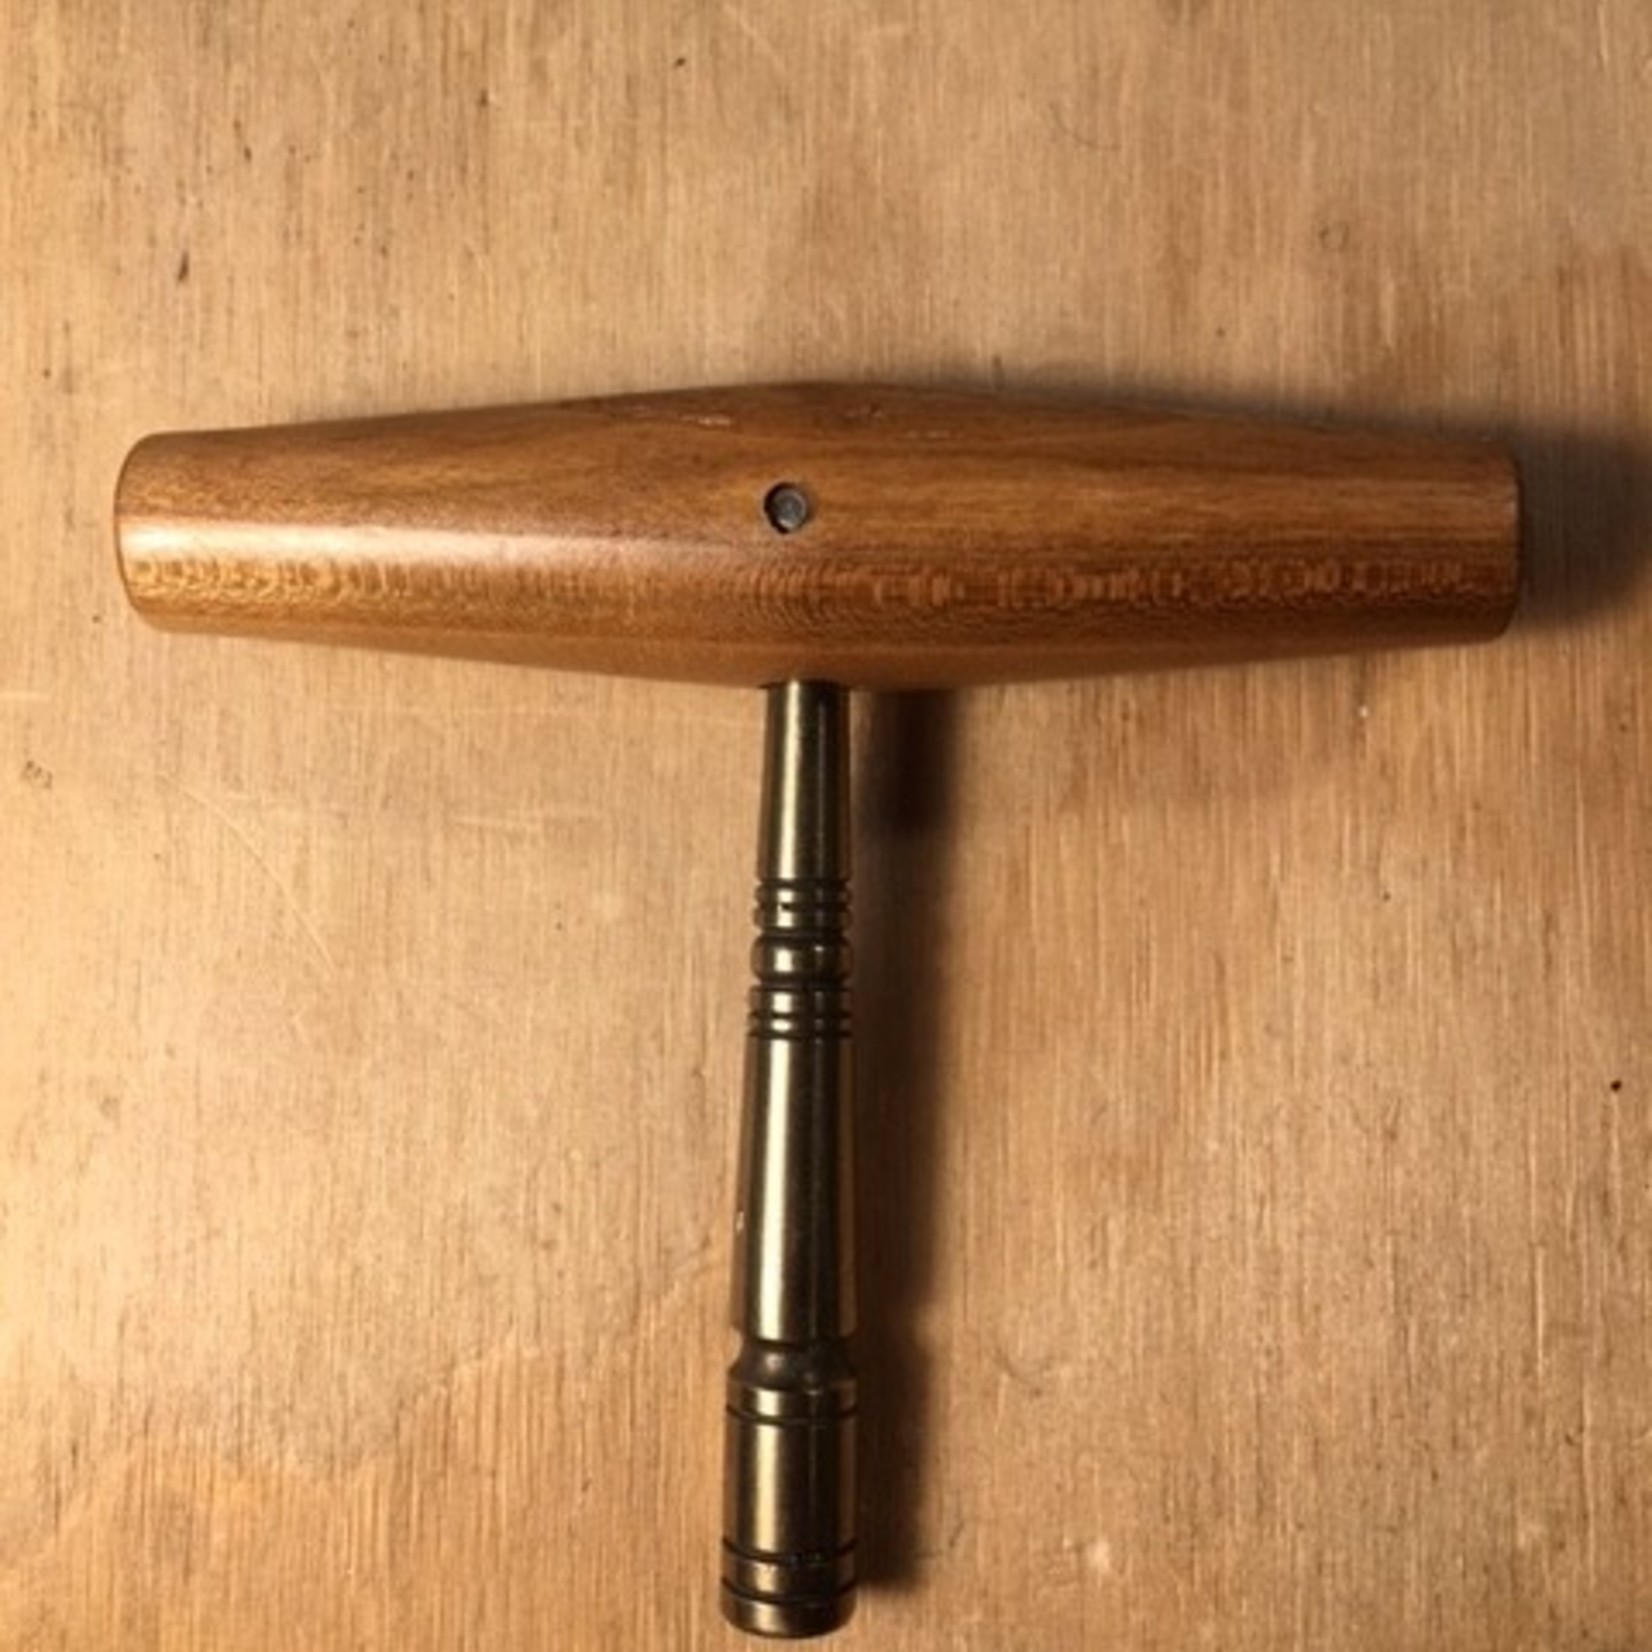 Stemsleutel klavecimbel  in hardhout - gedraaid metalen stang - zonder messing doppen Voor 5 mm stempin met RechtHoekige kop